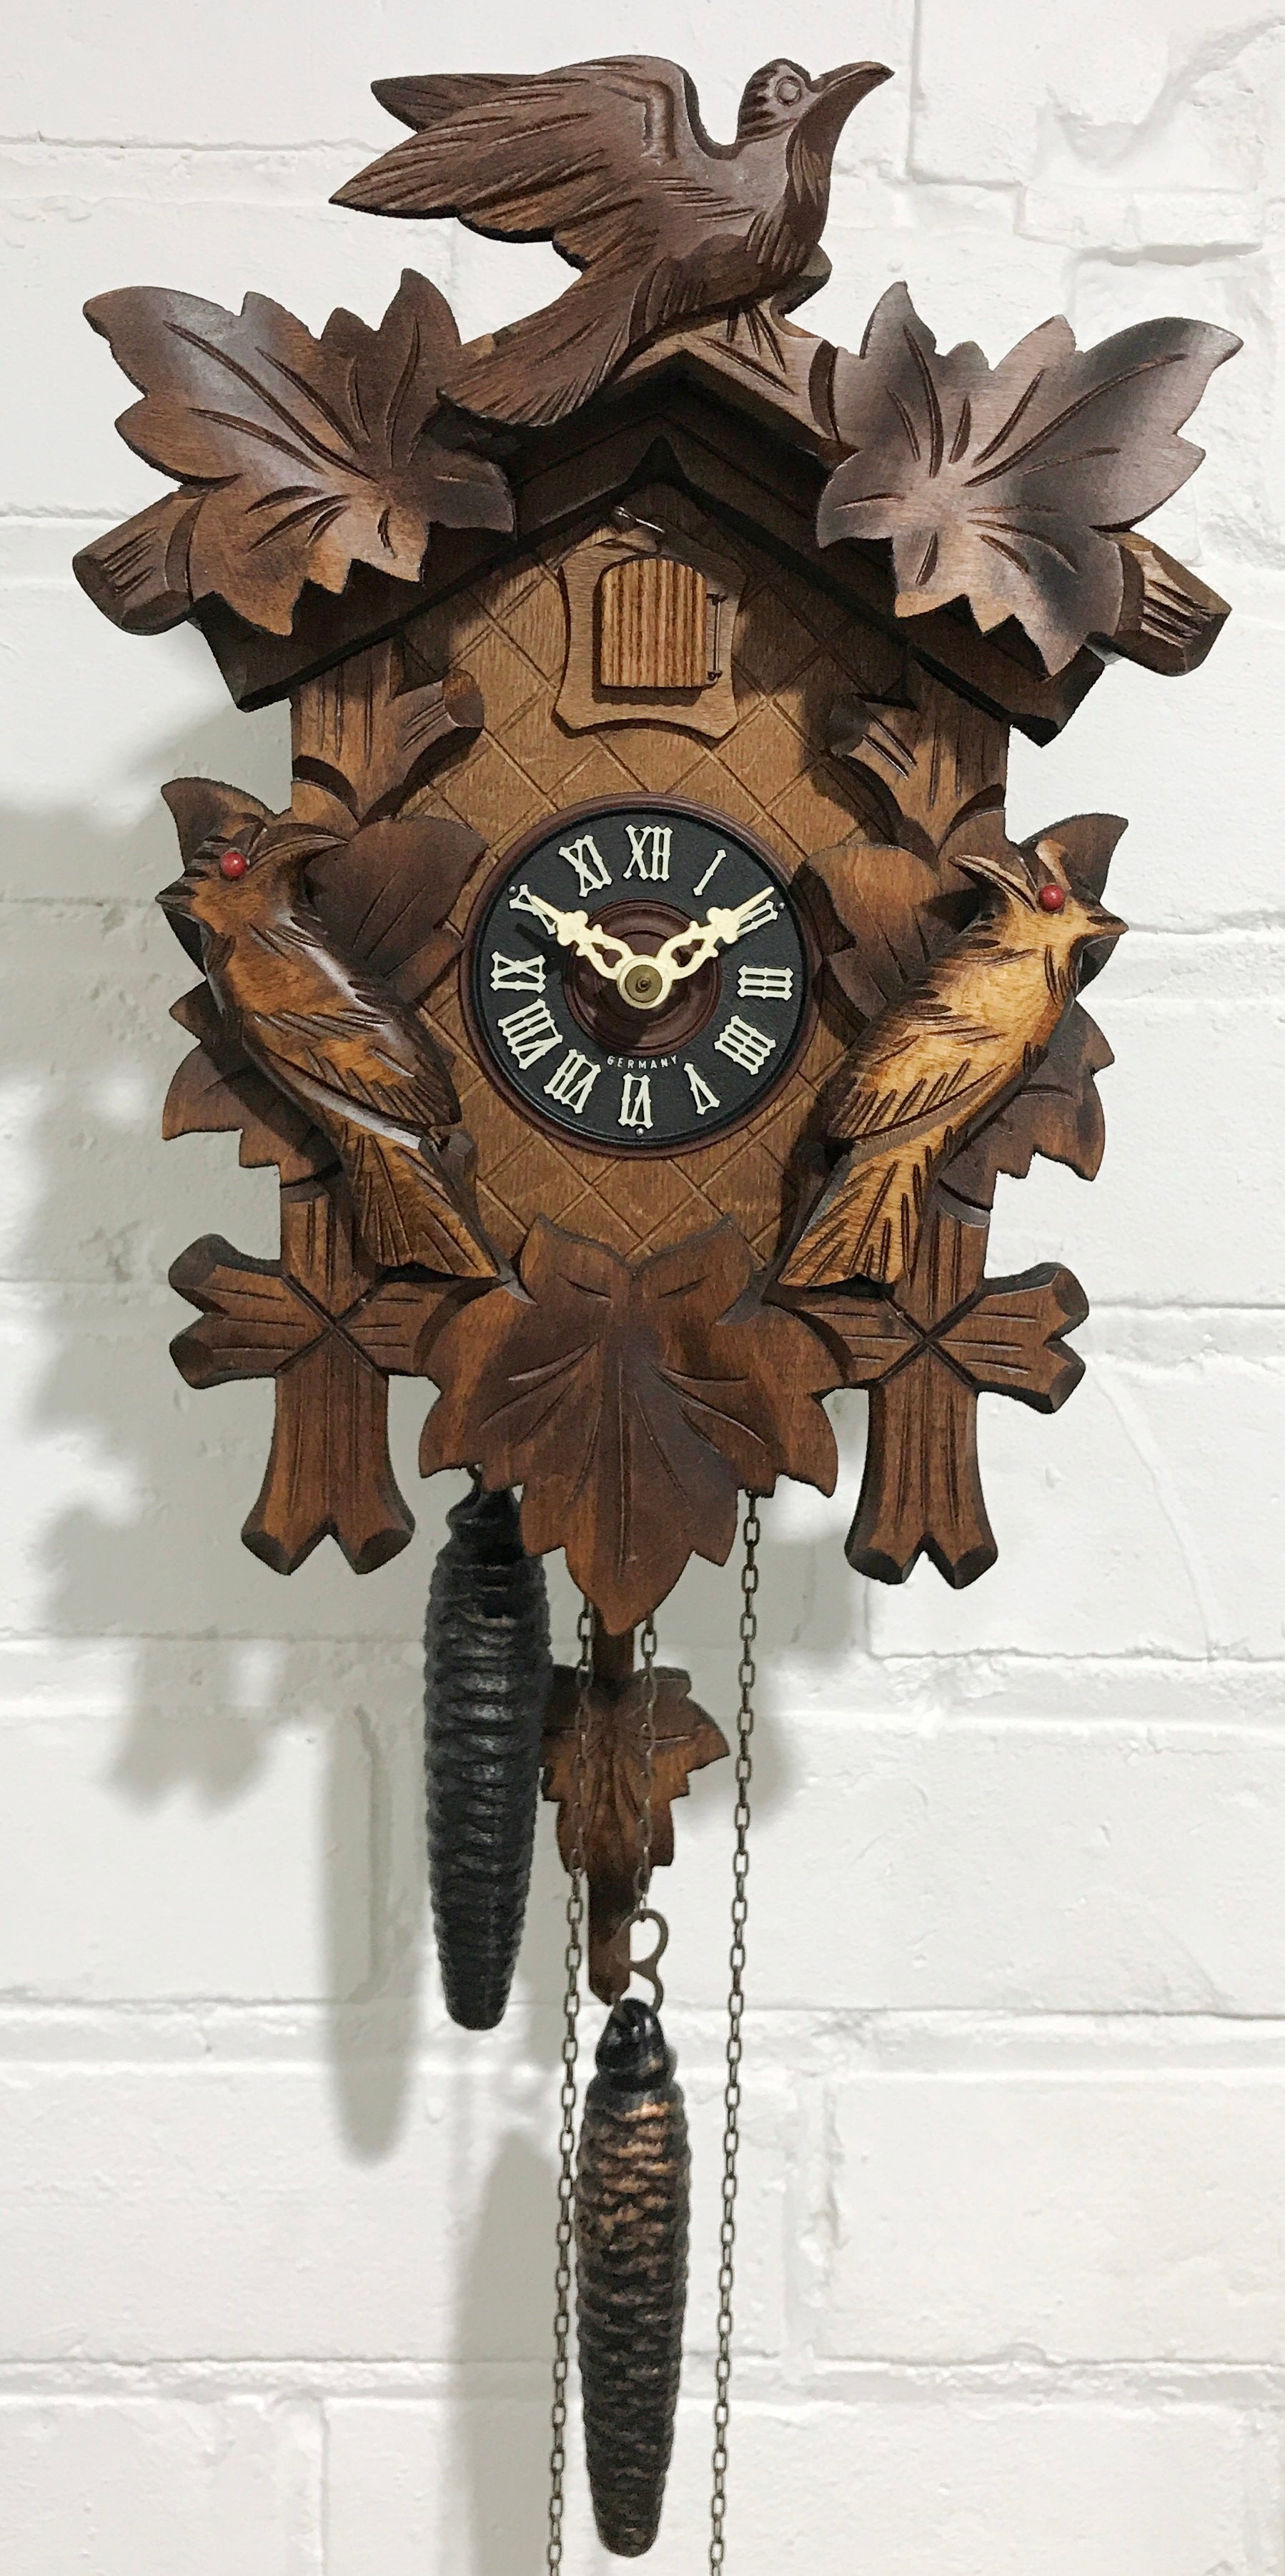 Vintage Cuckoo Clock | eXibit collection